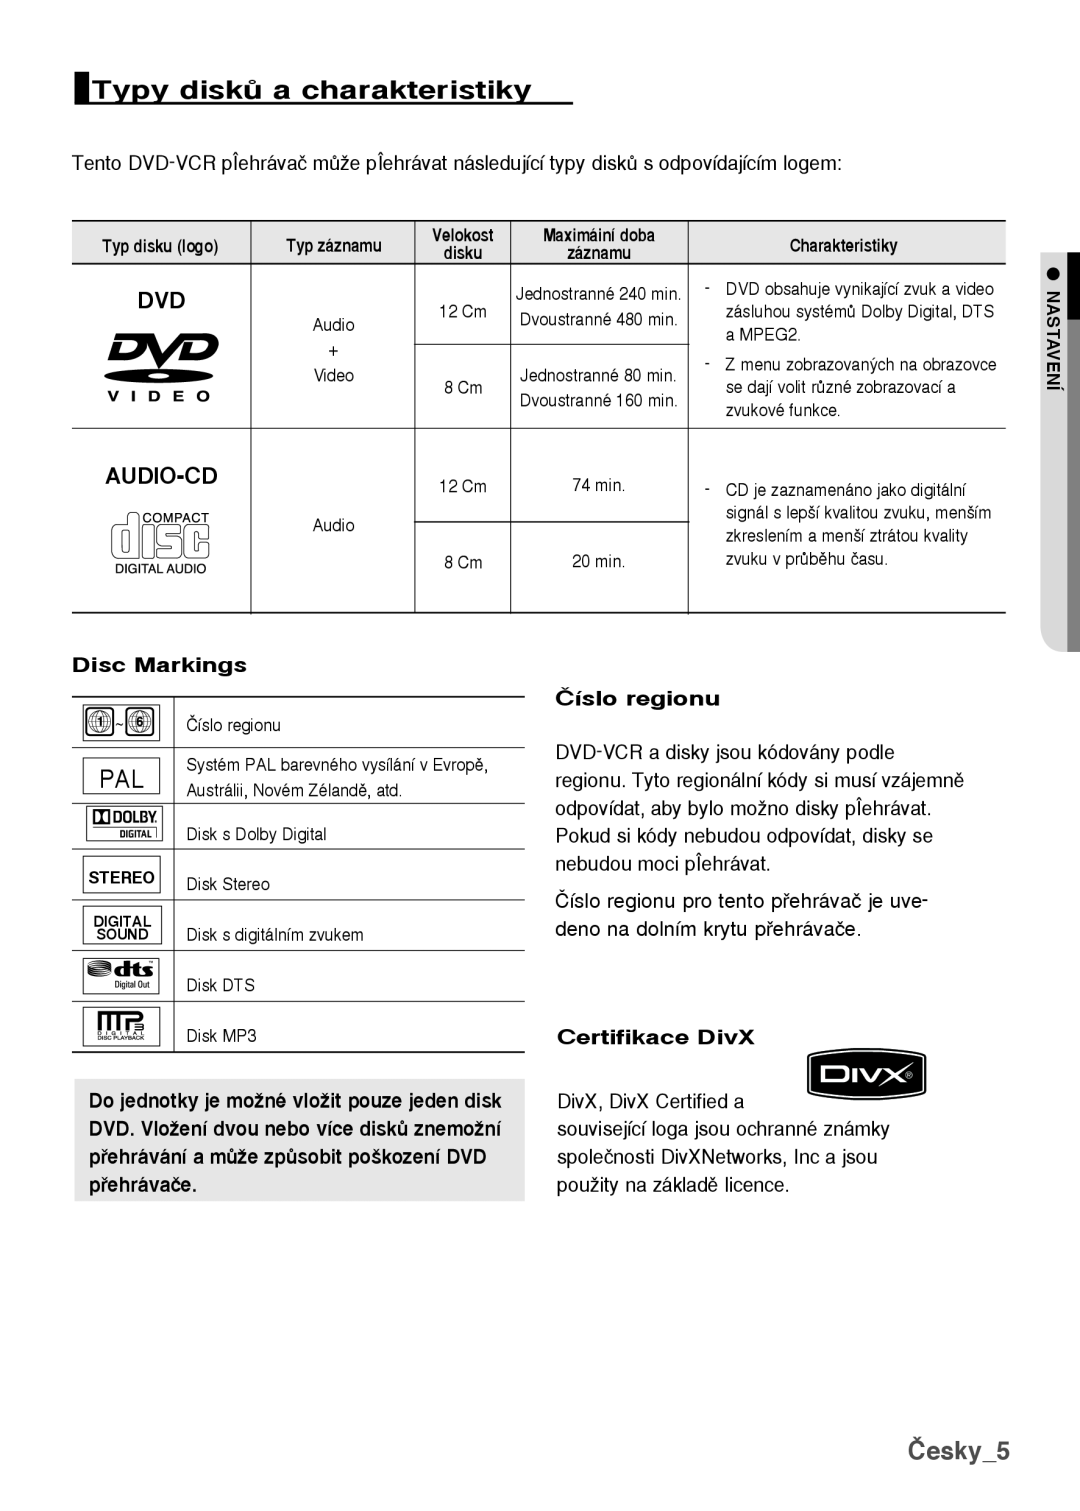 Samsung DVD-H1080/XET, DVD-H1080/EDC Typy diskÛ a charakteristiky, Česky, Disc Markings, âíslo regionu, Certifikace DivX 